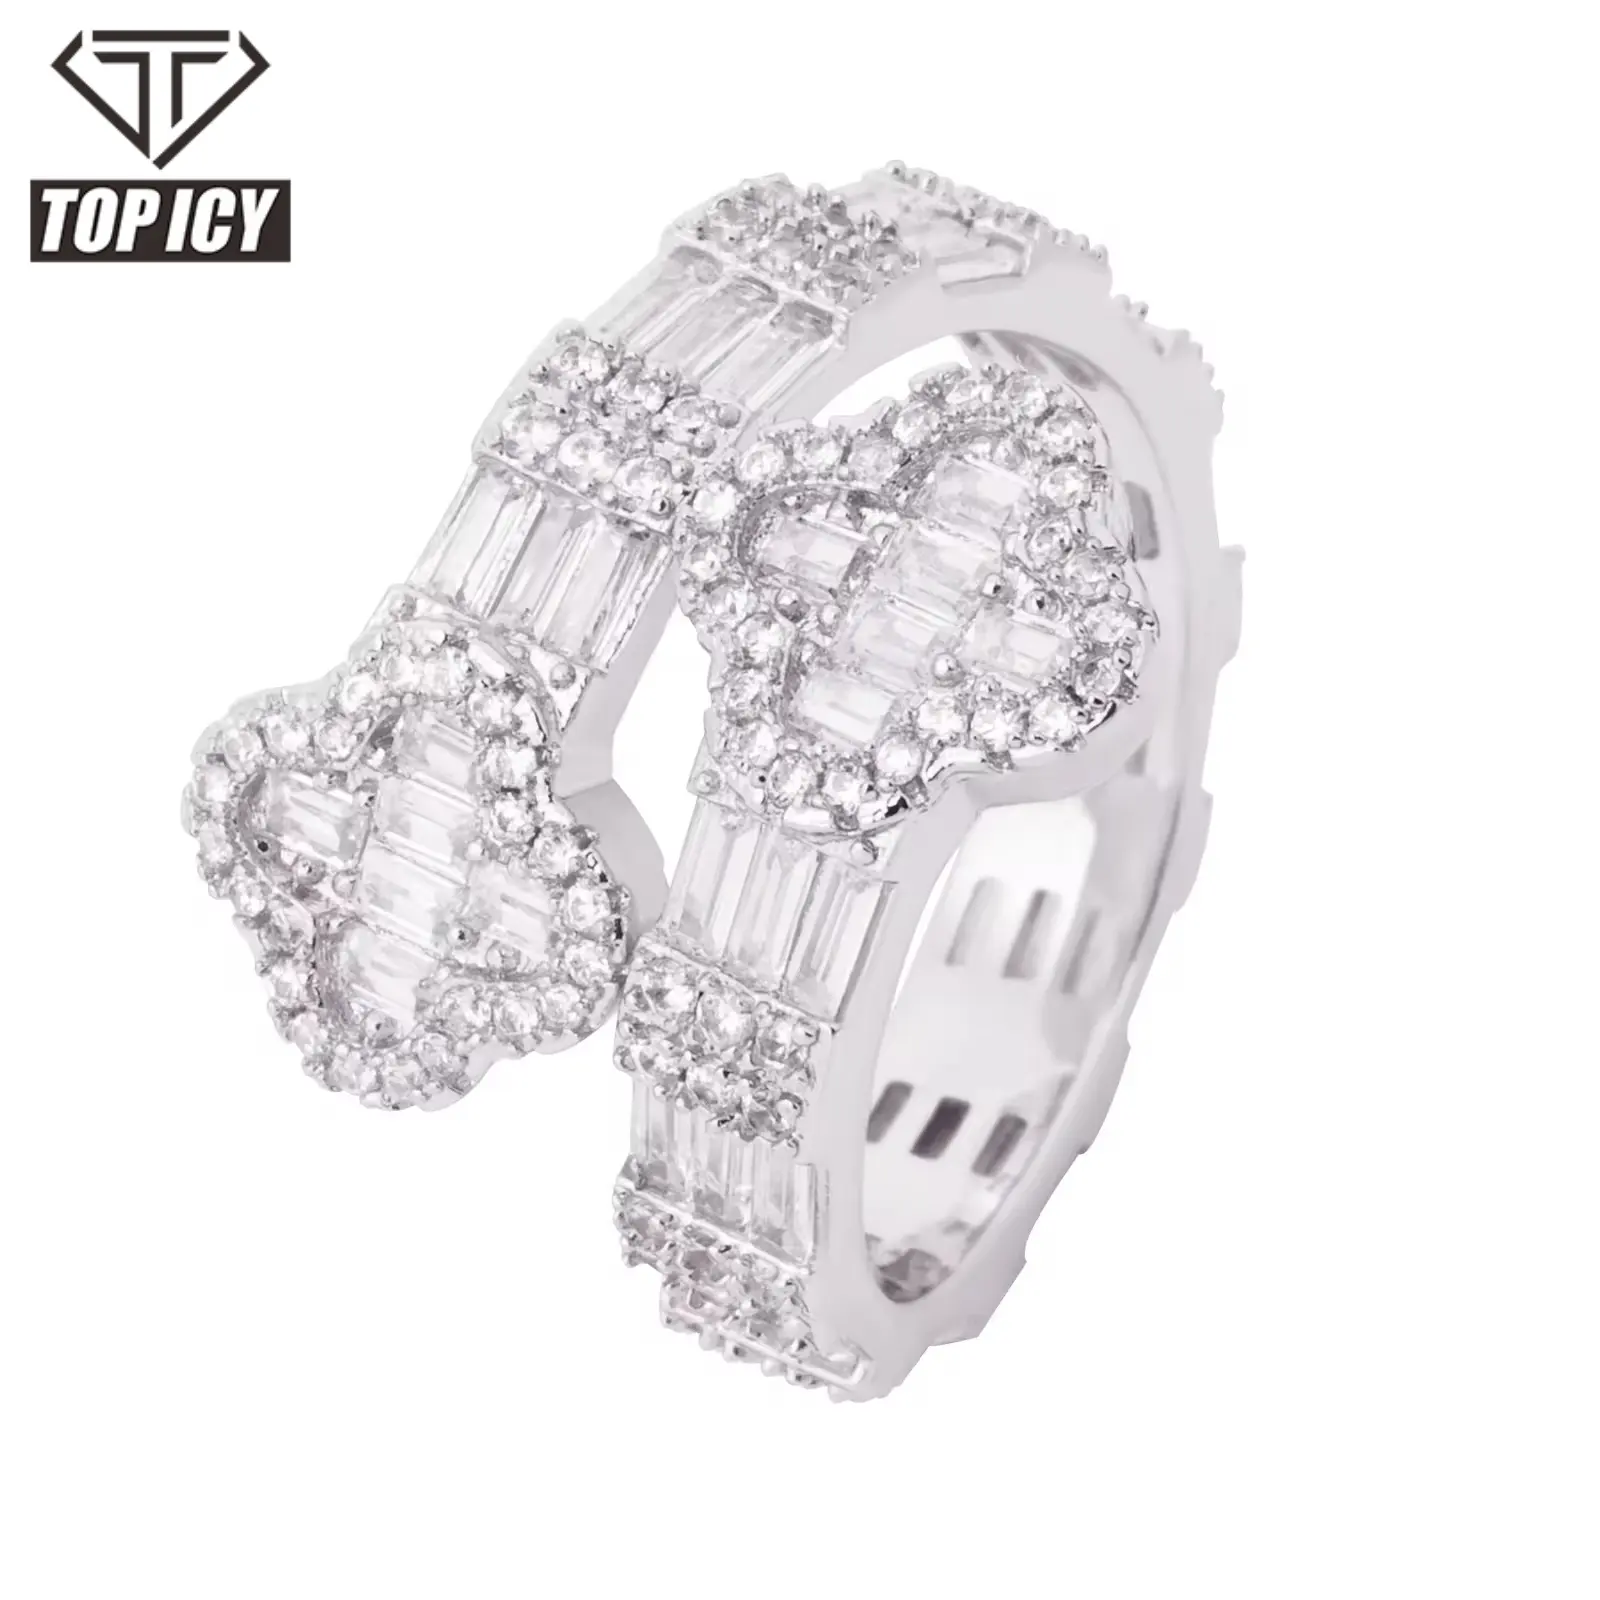 Nieuw Design Sprankelende Ring Hot Selling Zirkoon Klaver Vorm Hiphop Accessoires Sieraden Voor Dames Mannen Unisex